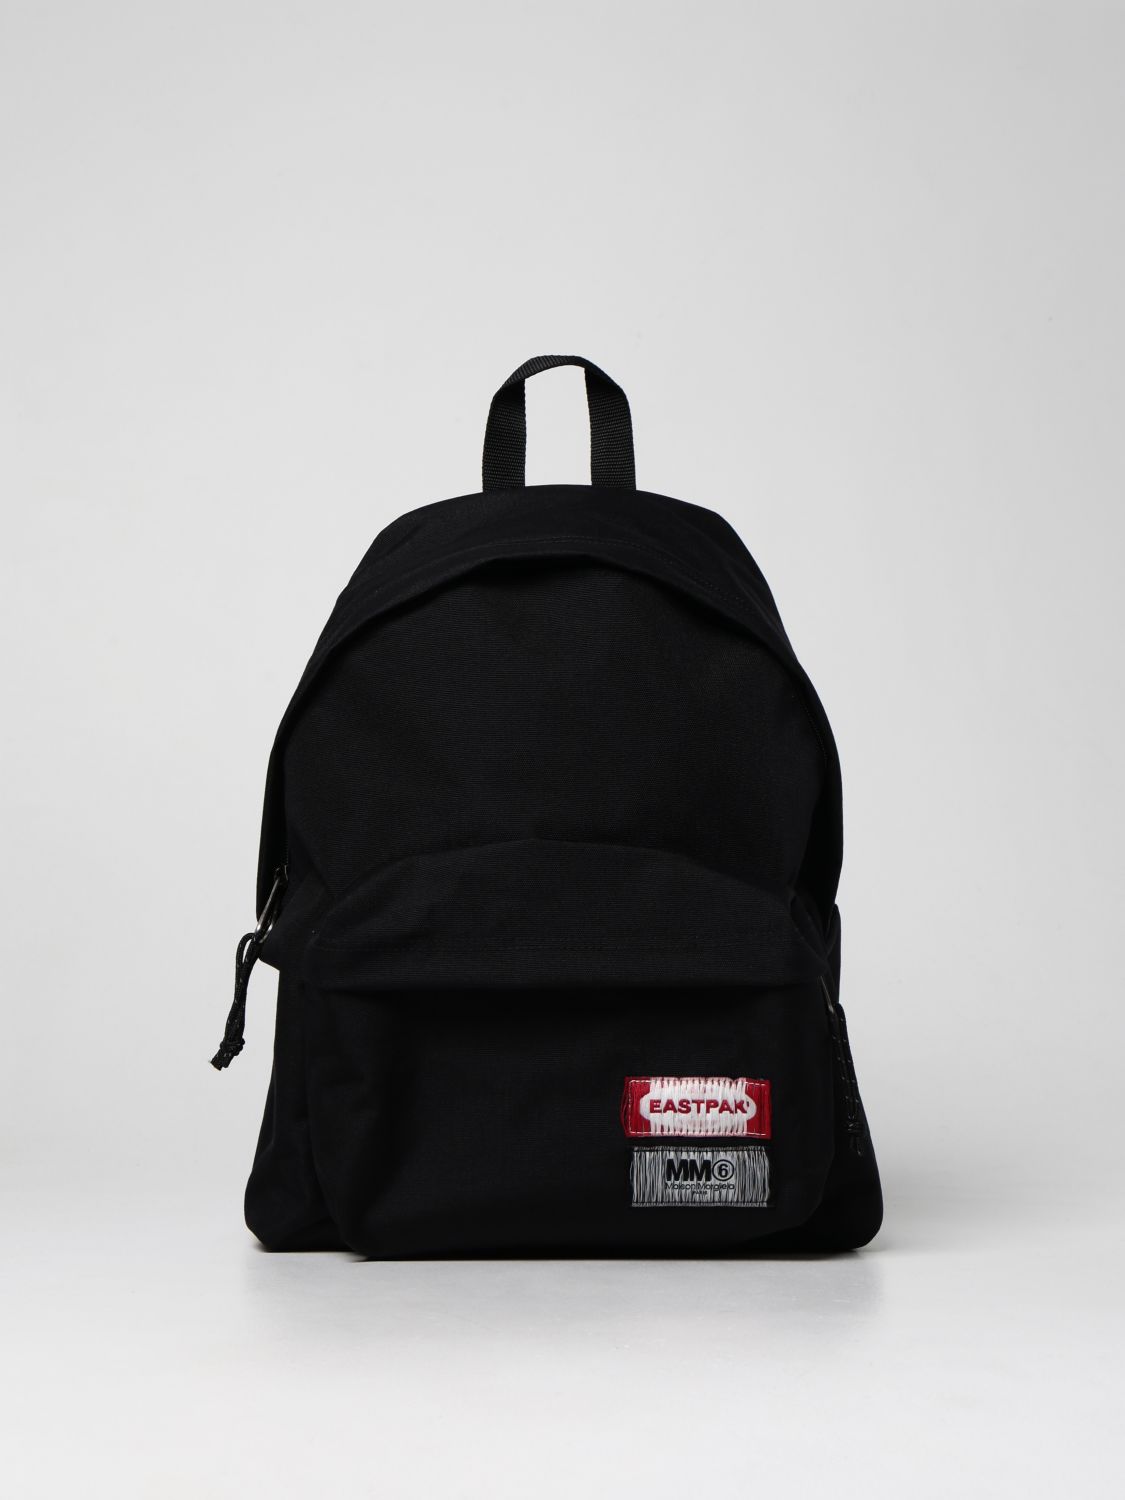 Backpack Eastpak: Mm6 Maison Margiela x Eastpak nylon backpack black 1